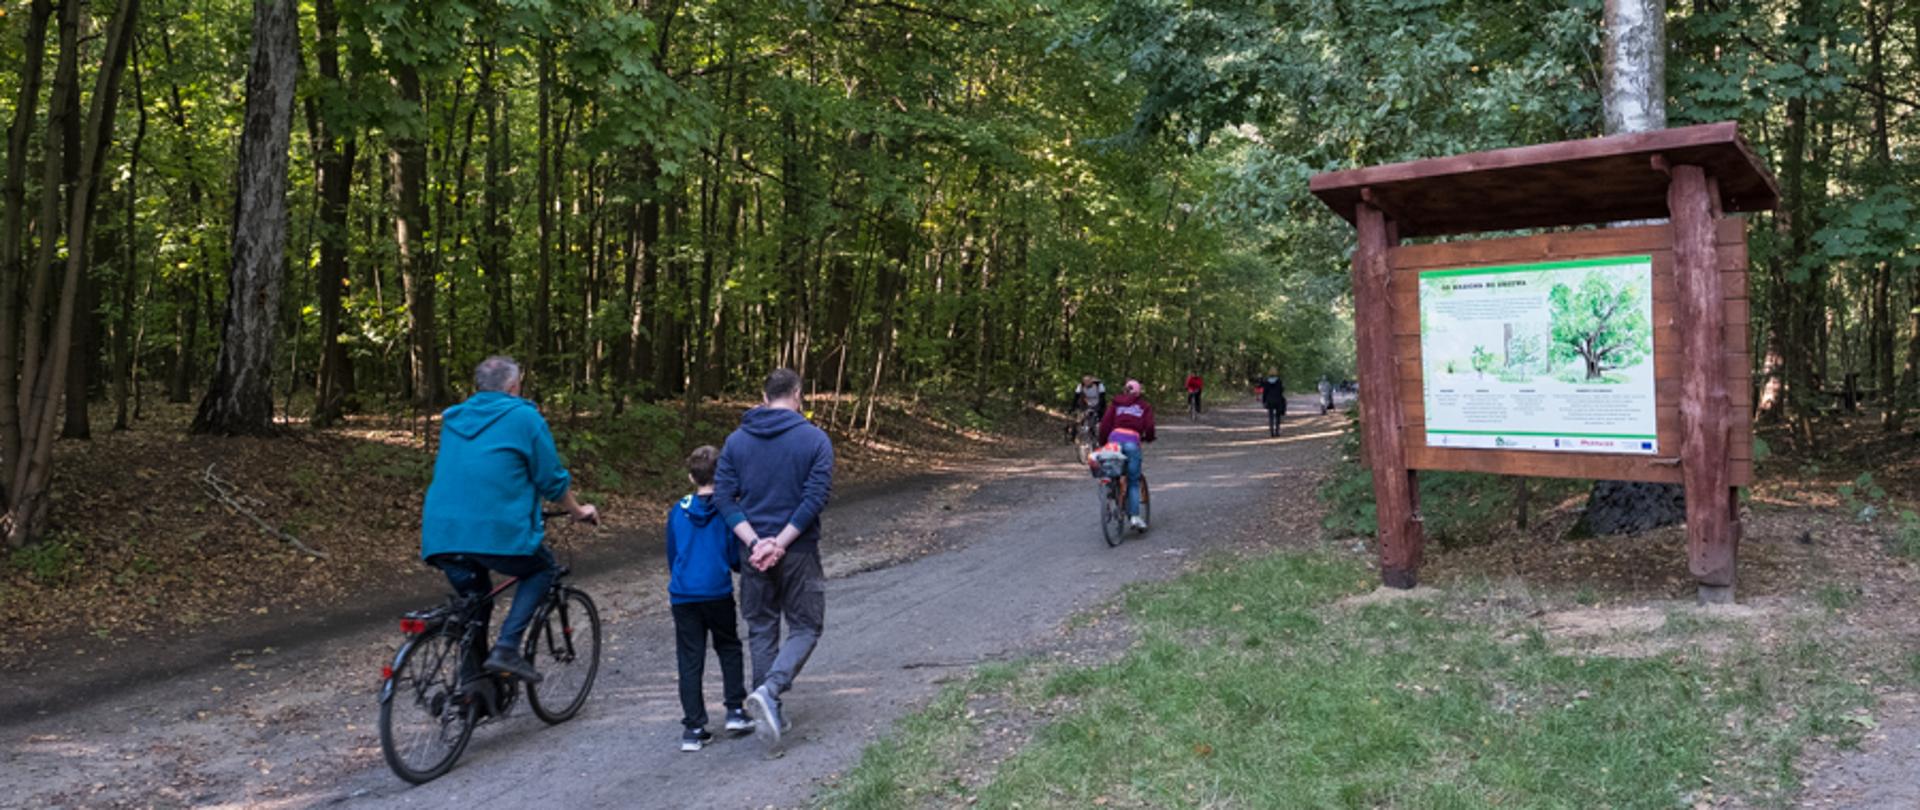 Widok na ścieżkę w lesie, na ścieżce piesi i rowerzyści, dorośli i dzieci, po prawej stronie tablica edukacyjna